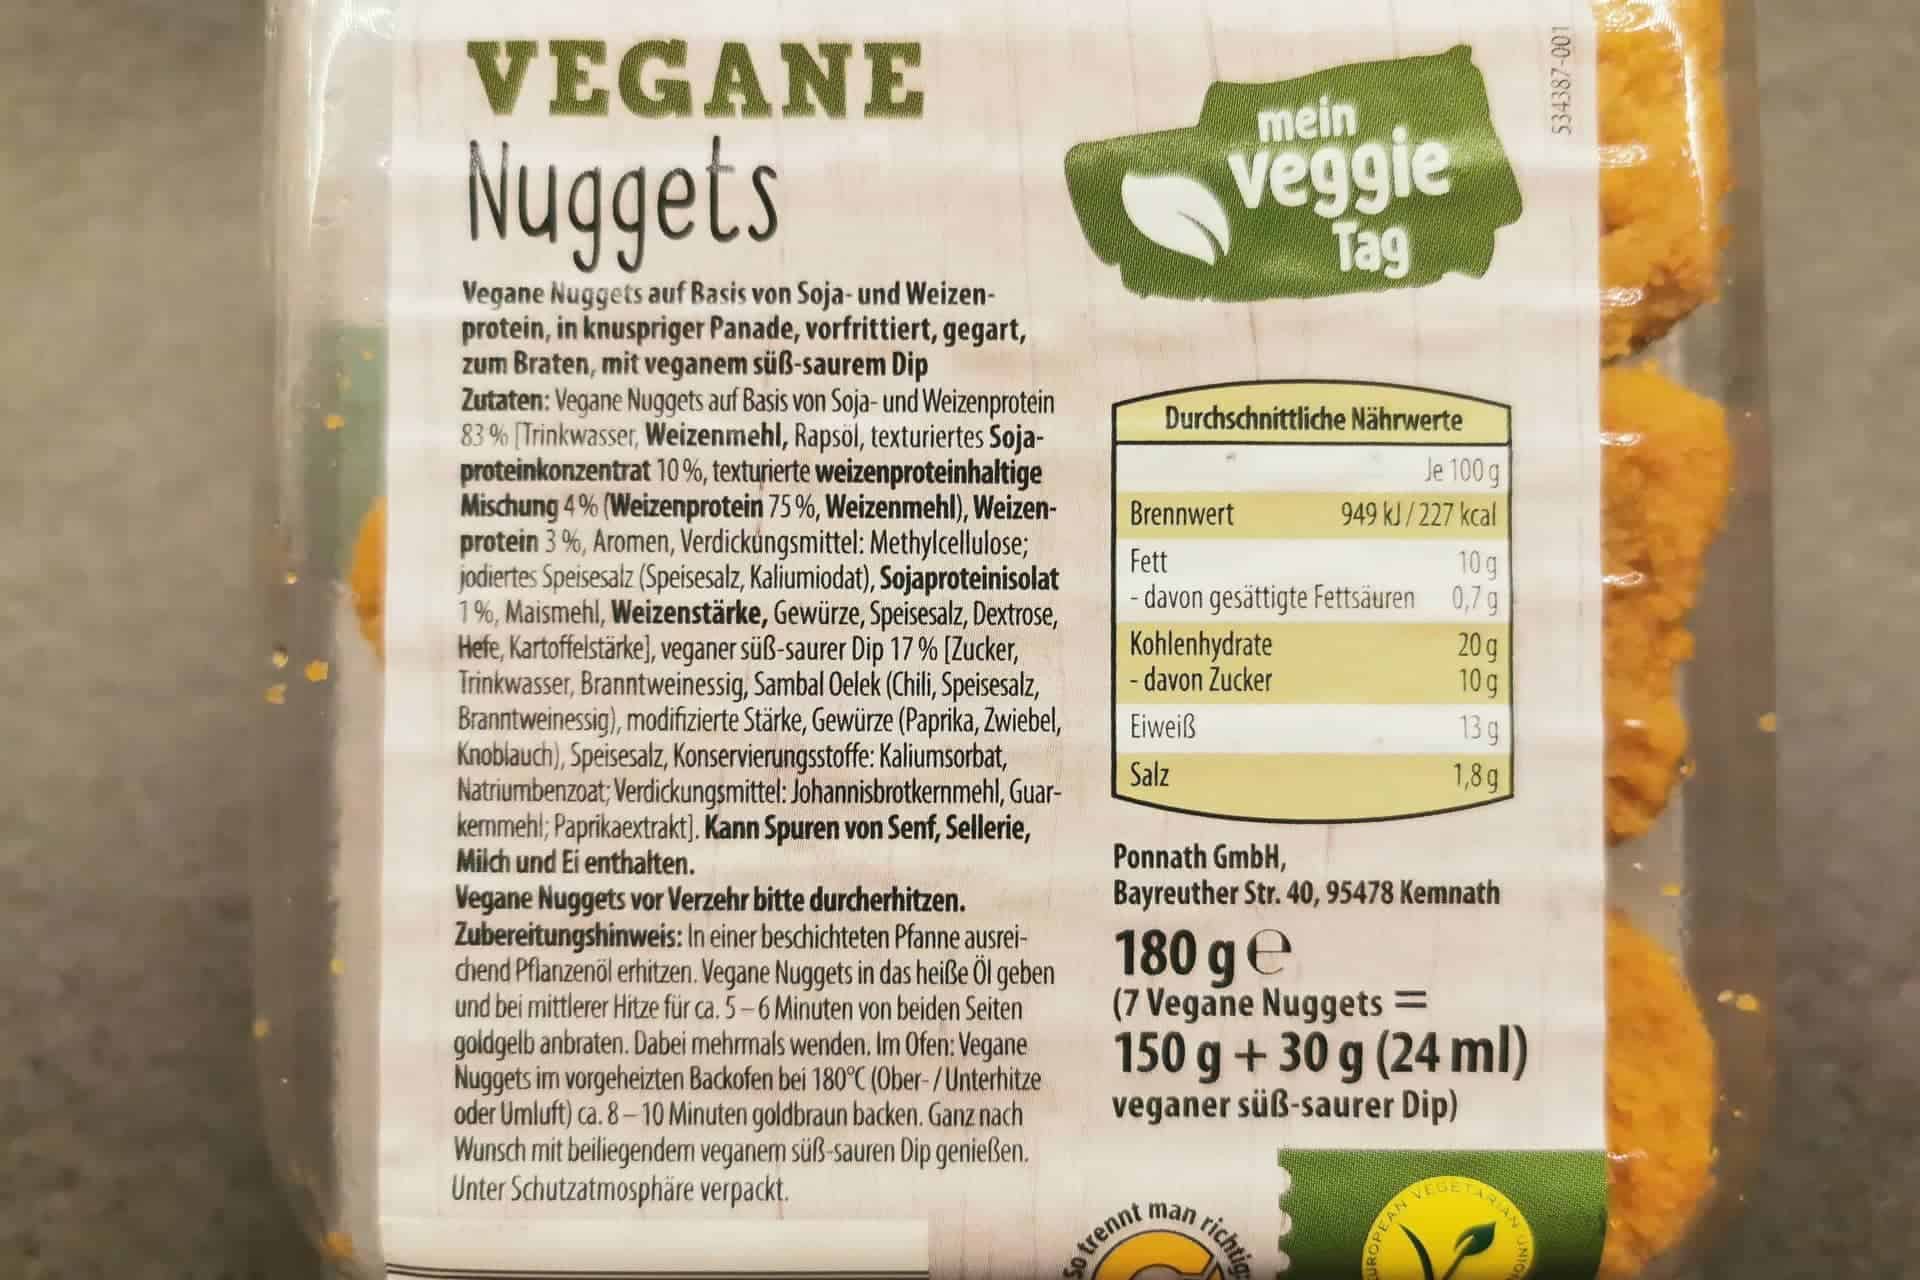 Mein Veggie Tag: Vegane Nuggets Nährwerte und Inhaltsstoffe